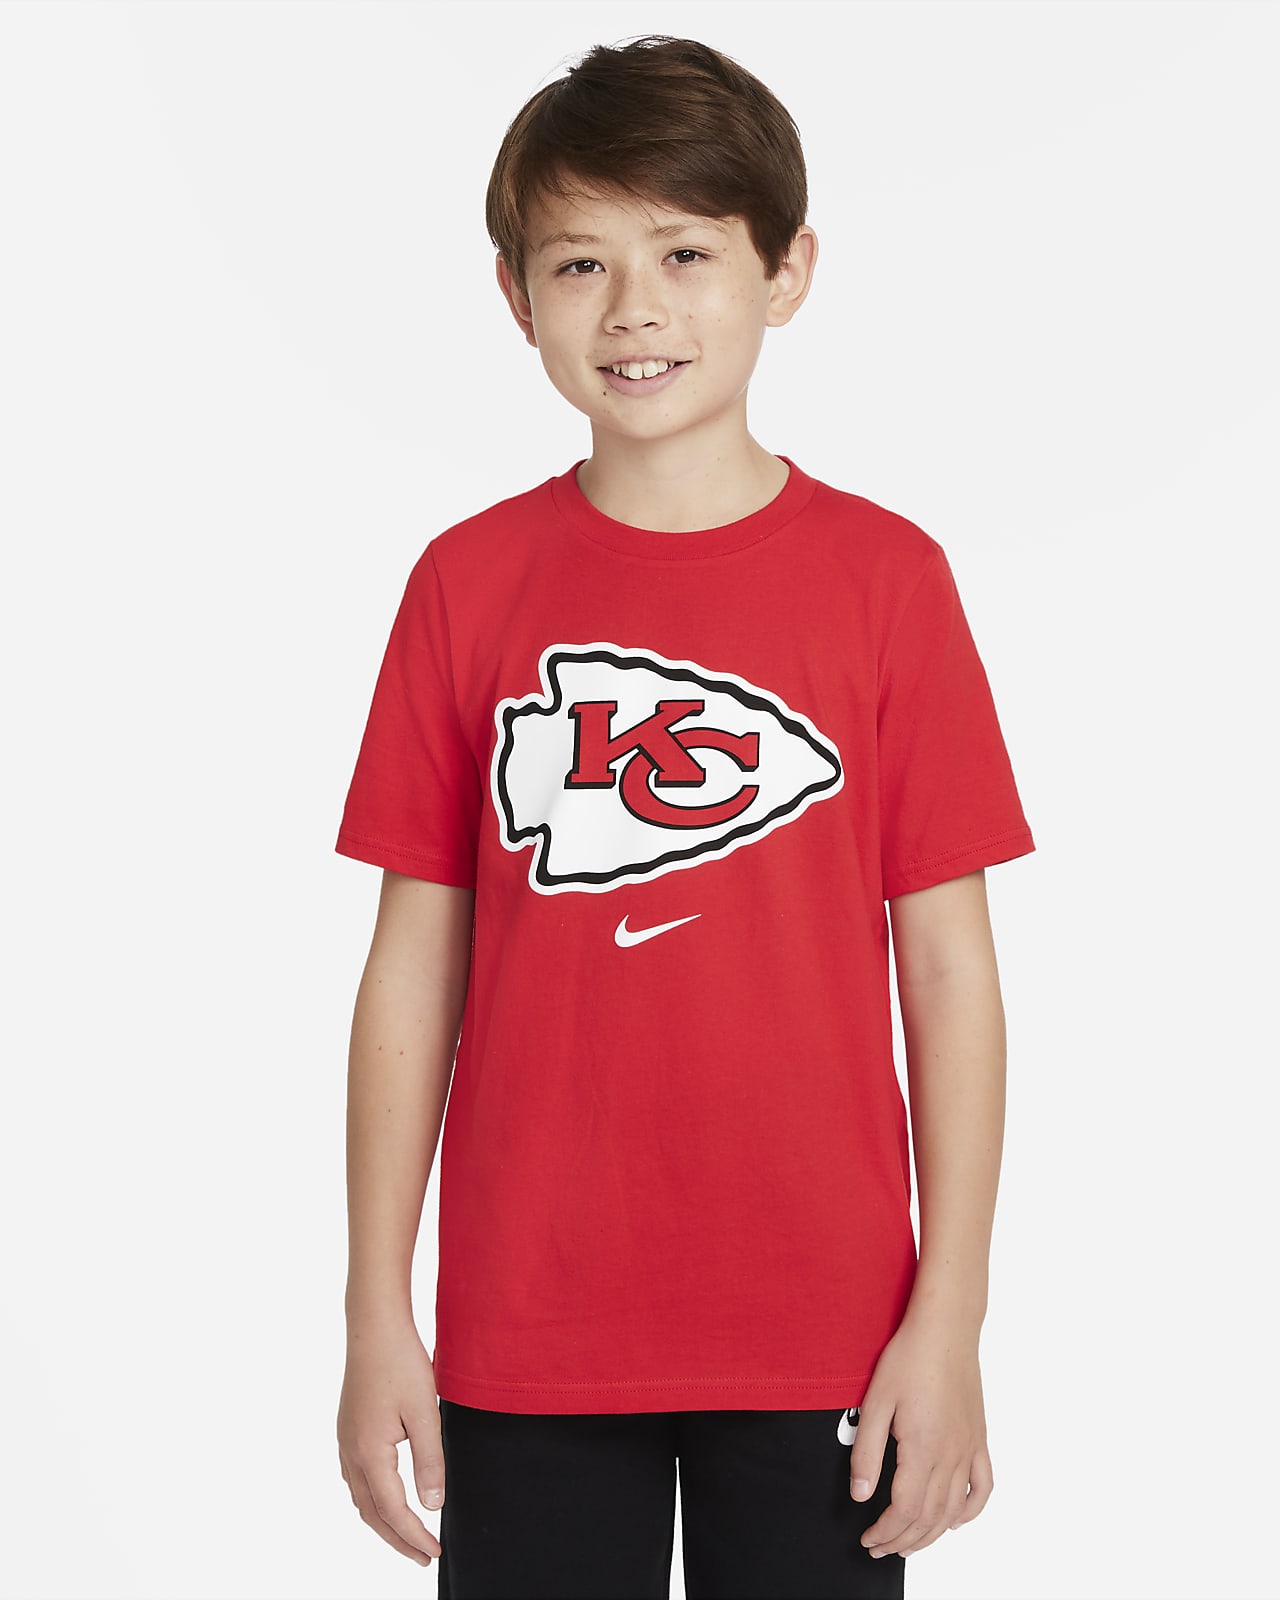 T-shirt Nike (NFL Kansas City Chiefs) pour ado